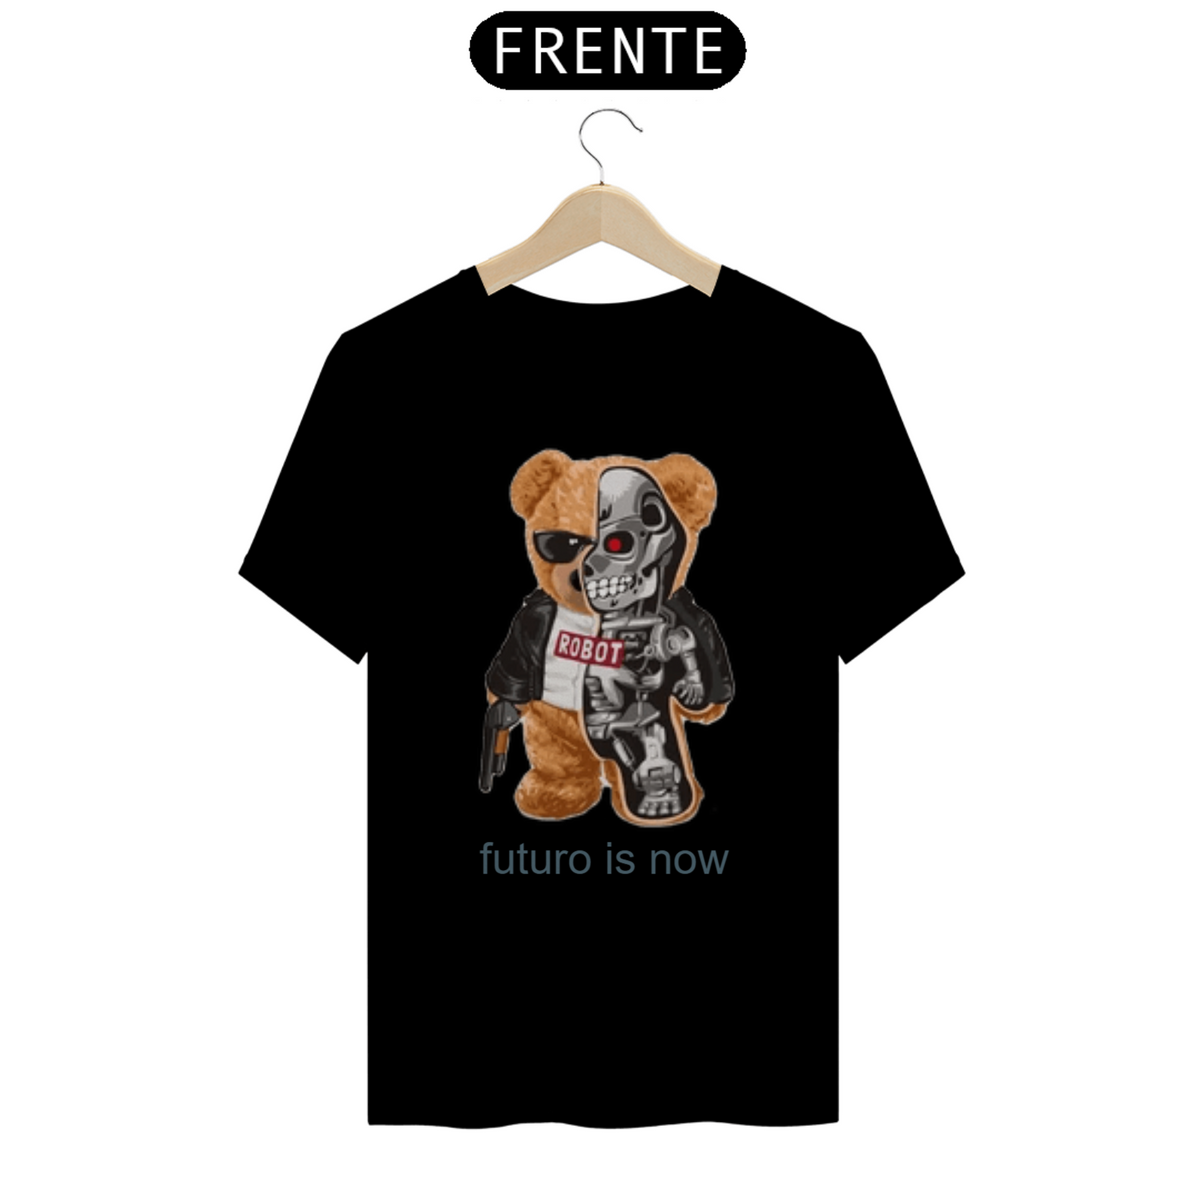 Nome do produto: Camiseta Blusa Camisa T-shirt Ursinho teddy metade robo exterminador do futuro